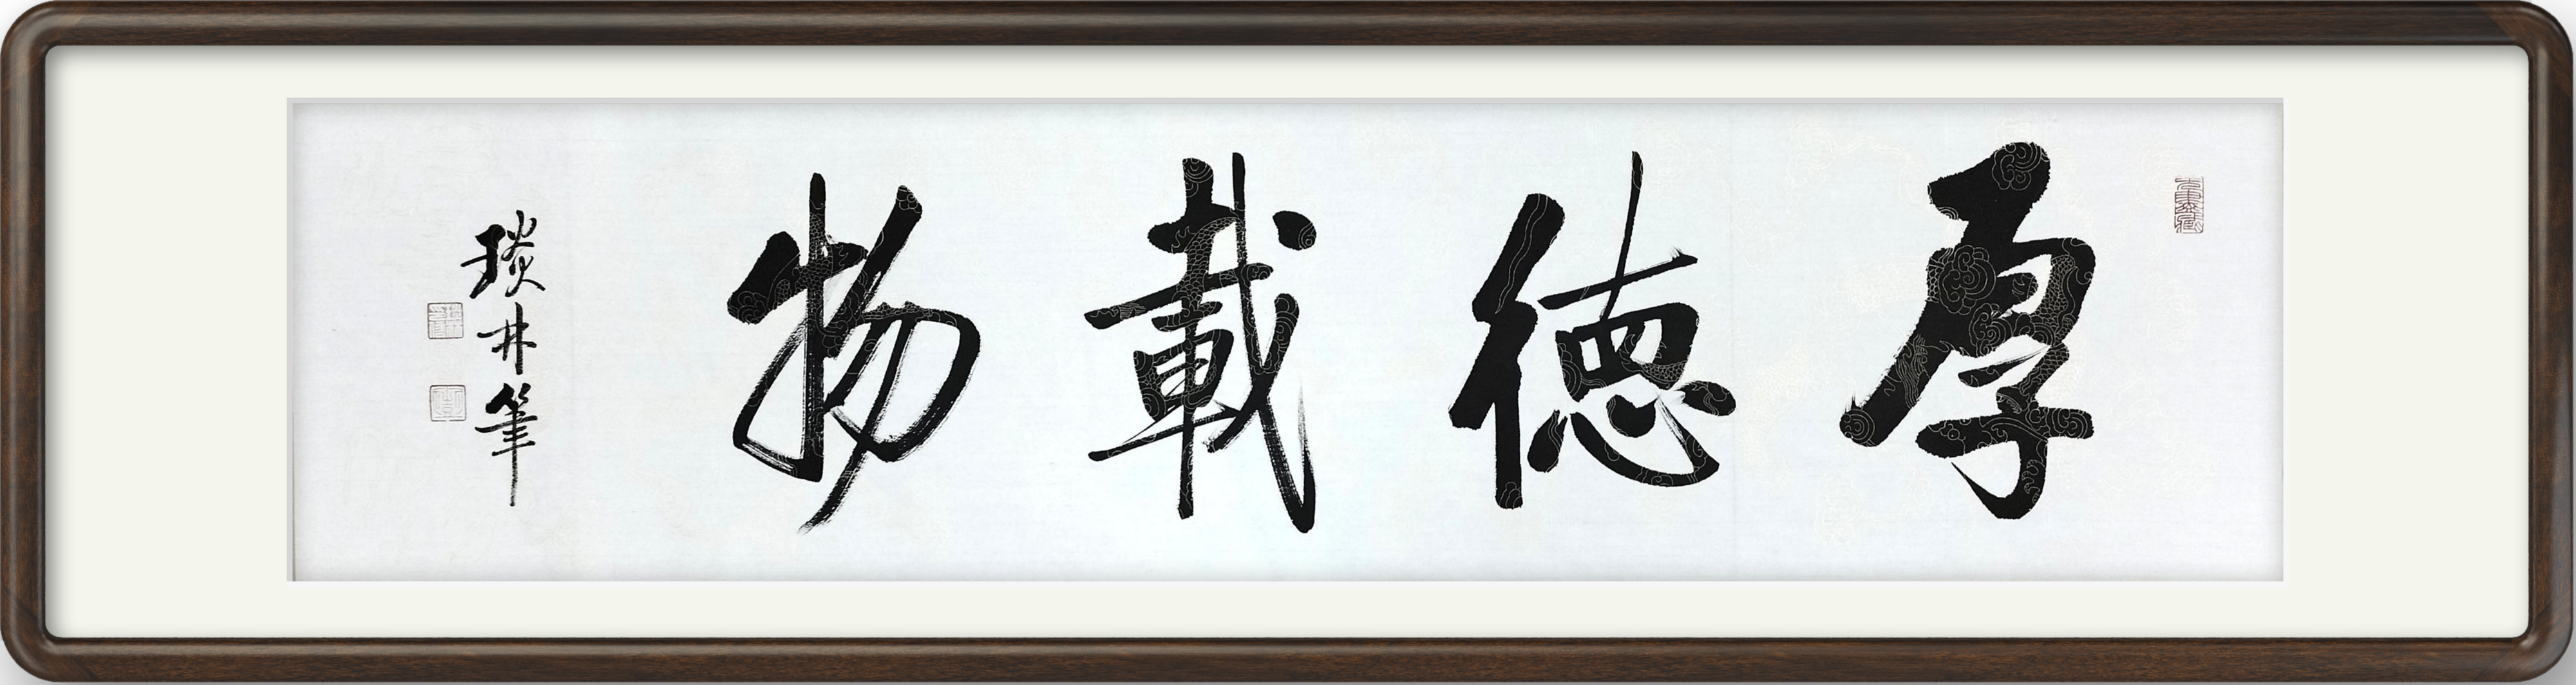 彭琰林手写启功书法作品《家和万事兴》《厚德载物》《上善若水》